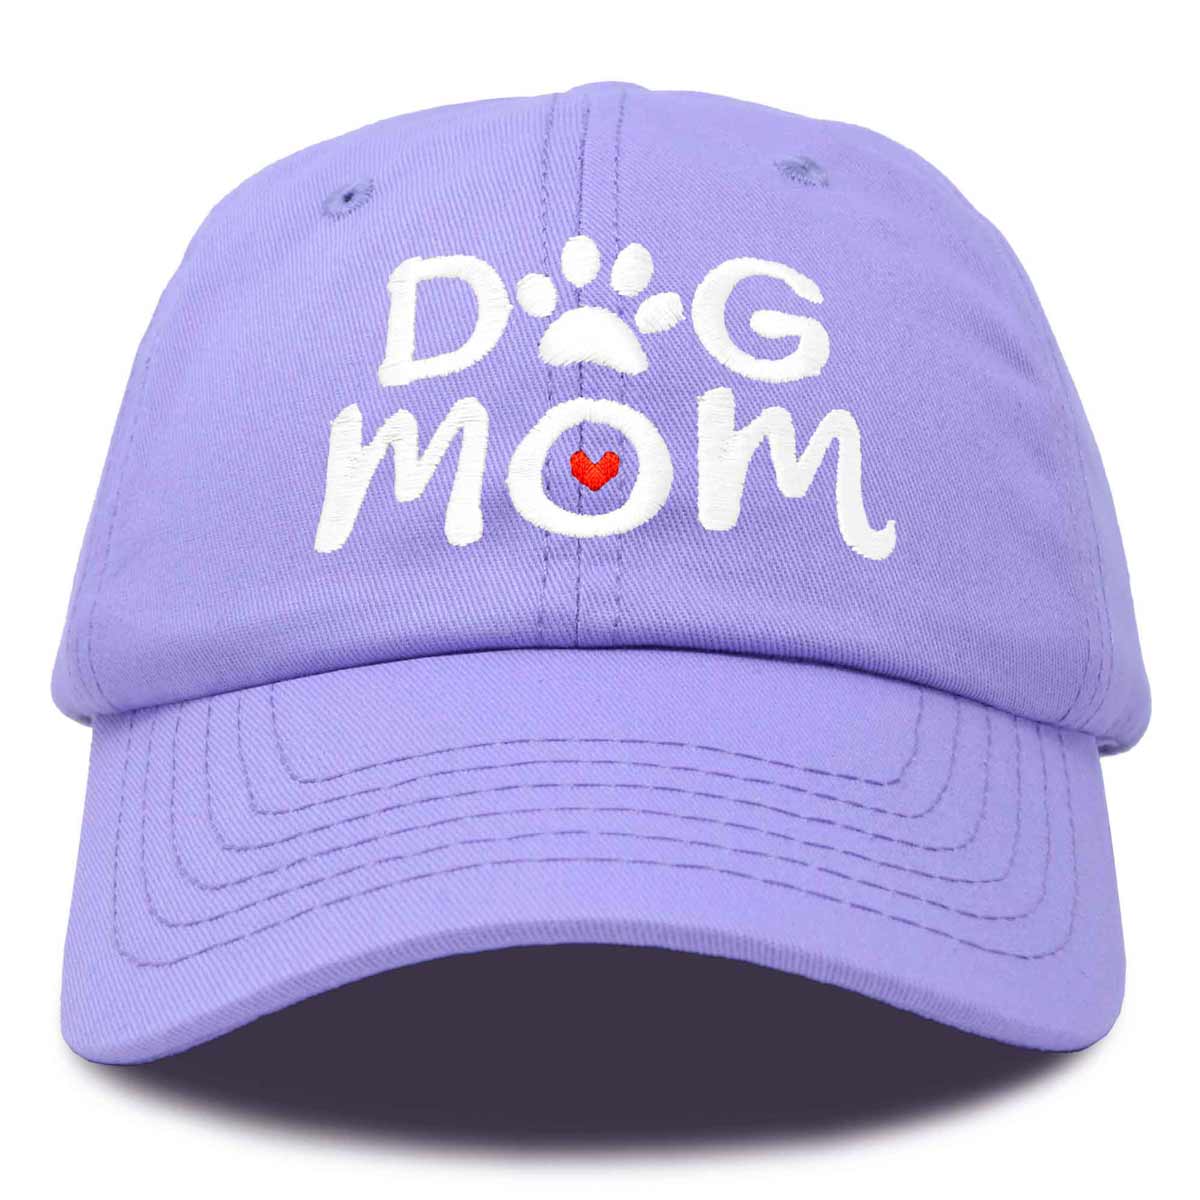 Dalix Dog Mom Cap